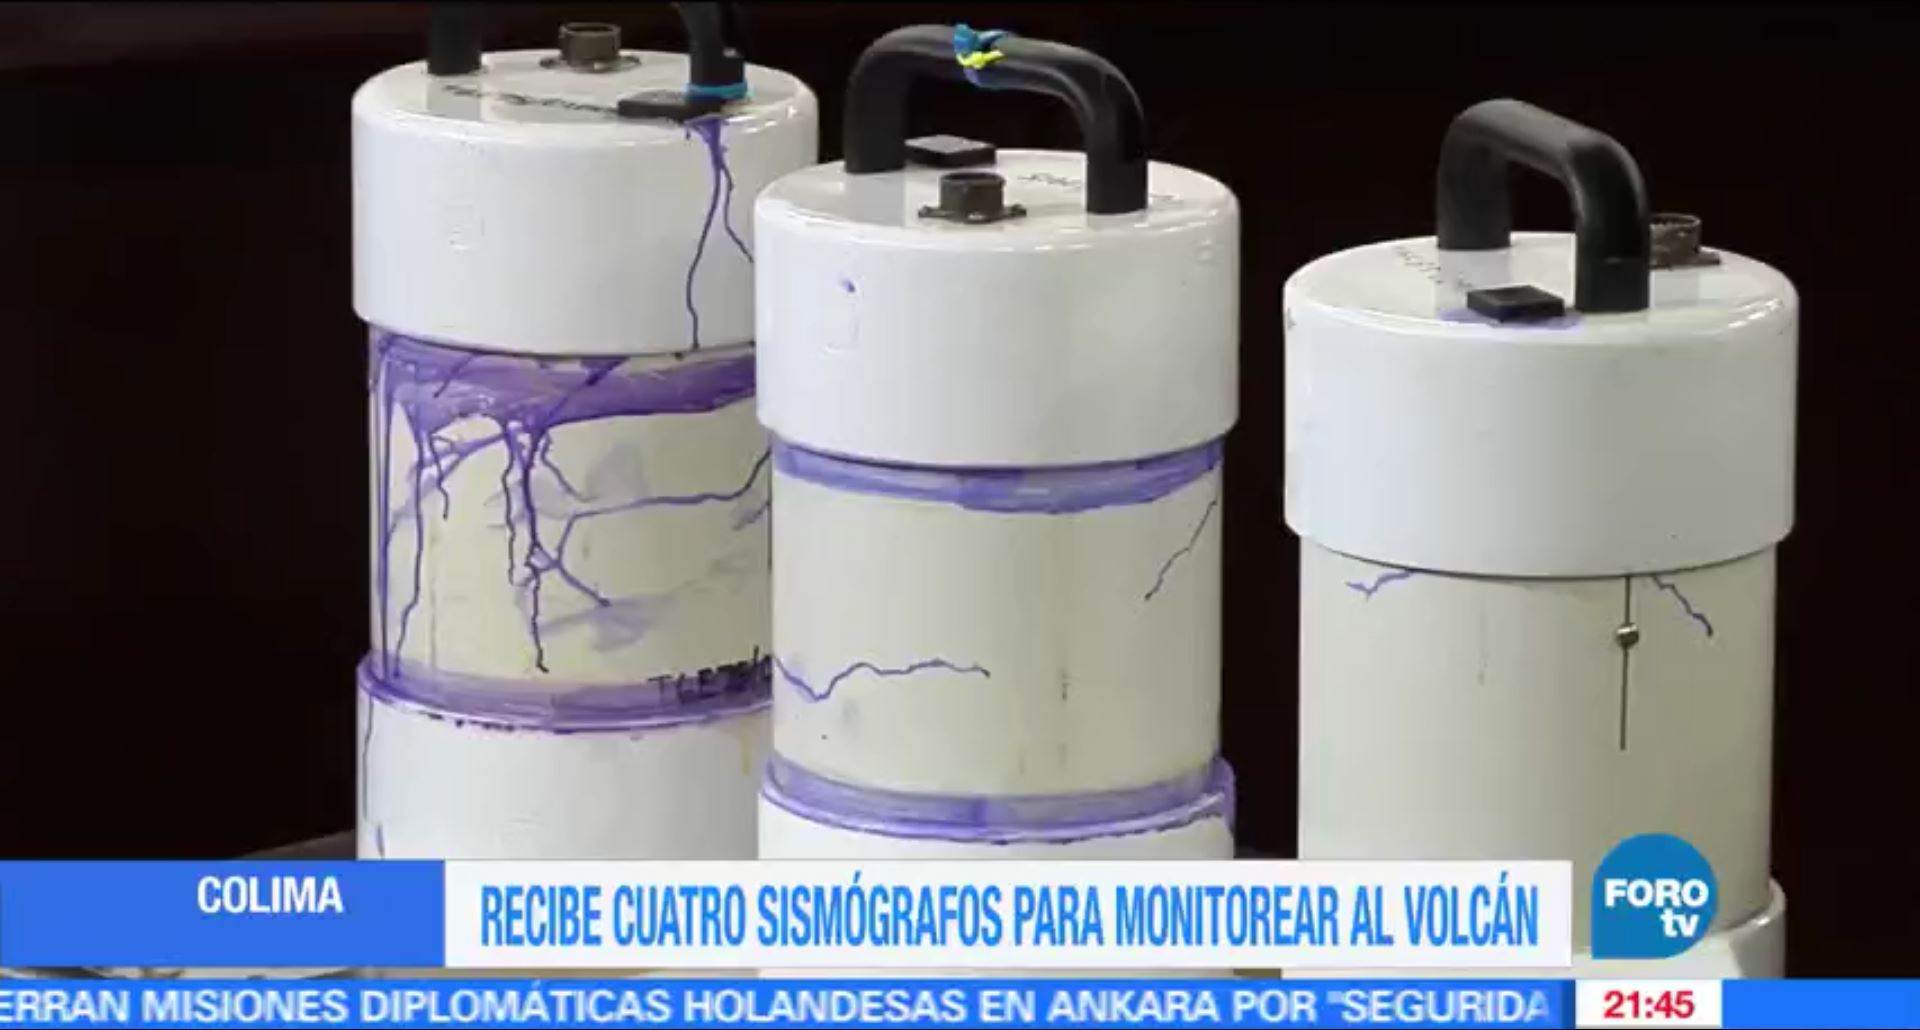 Donan 4 sismógrafos a Colima